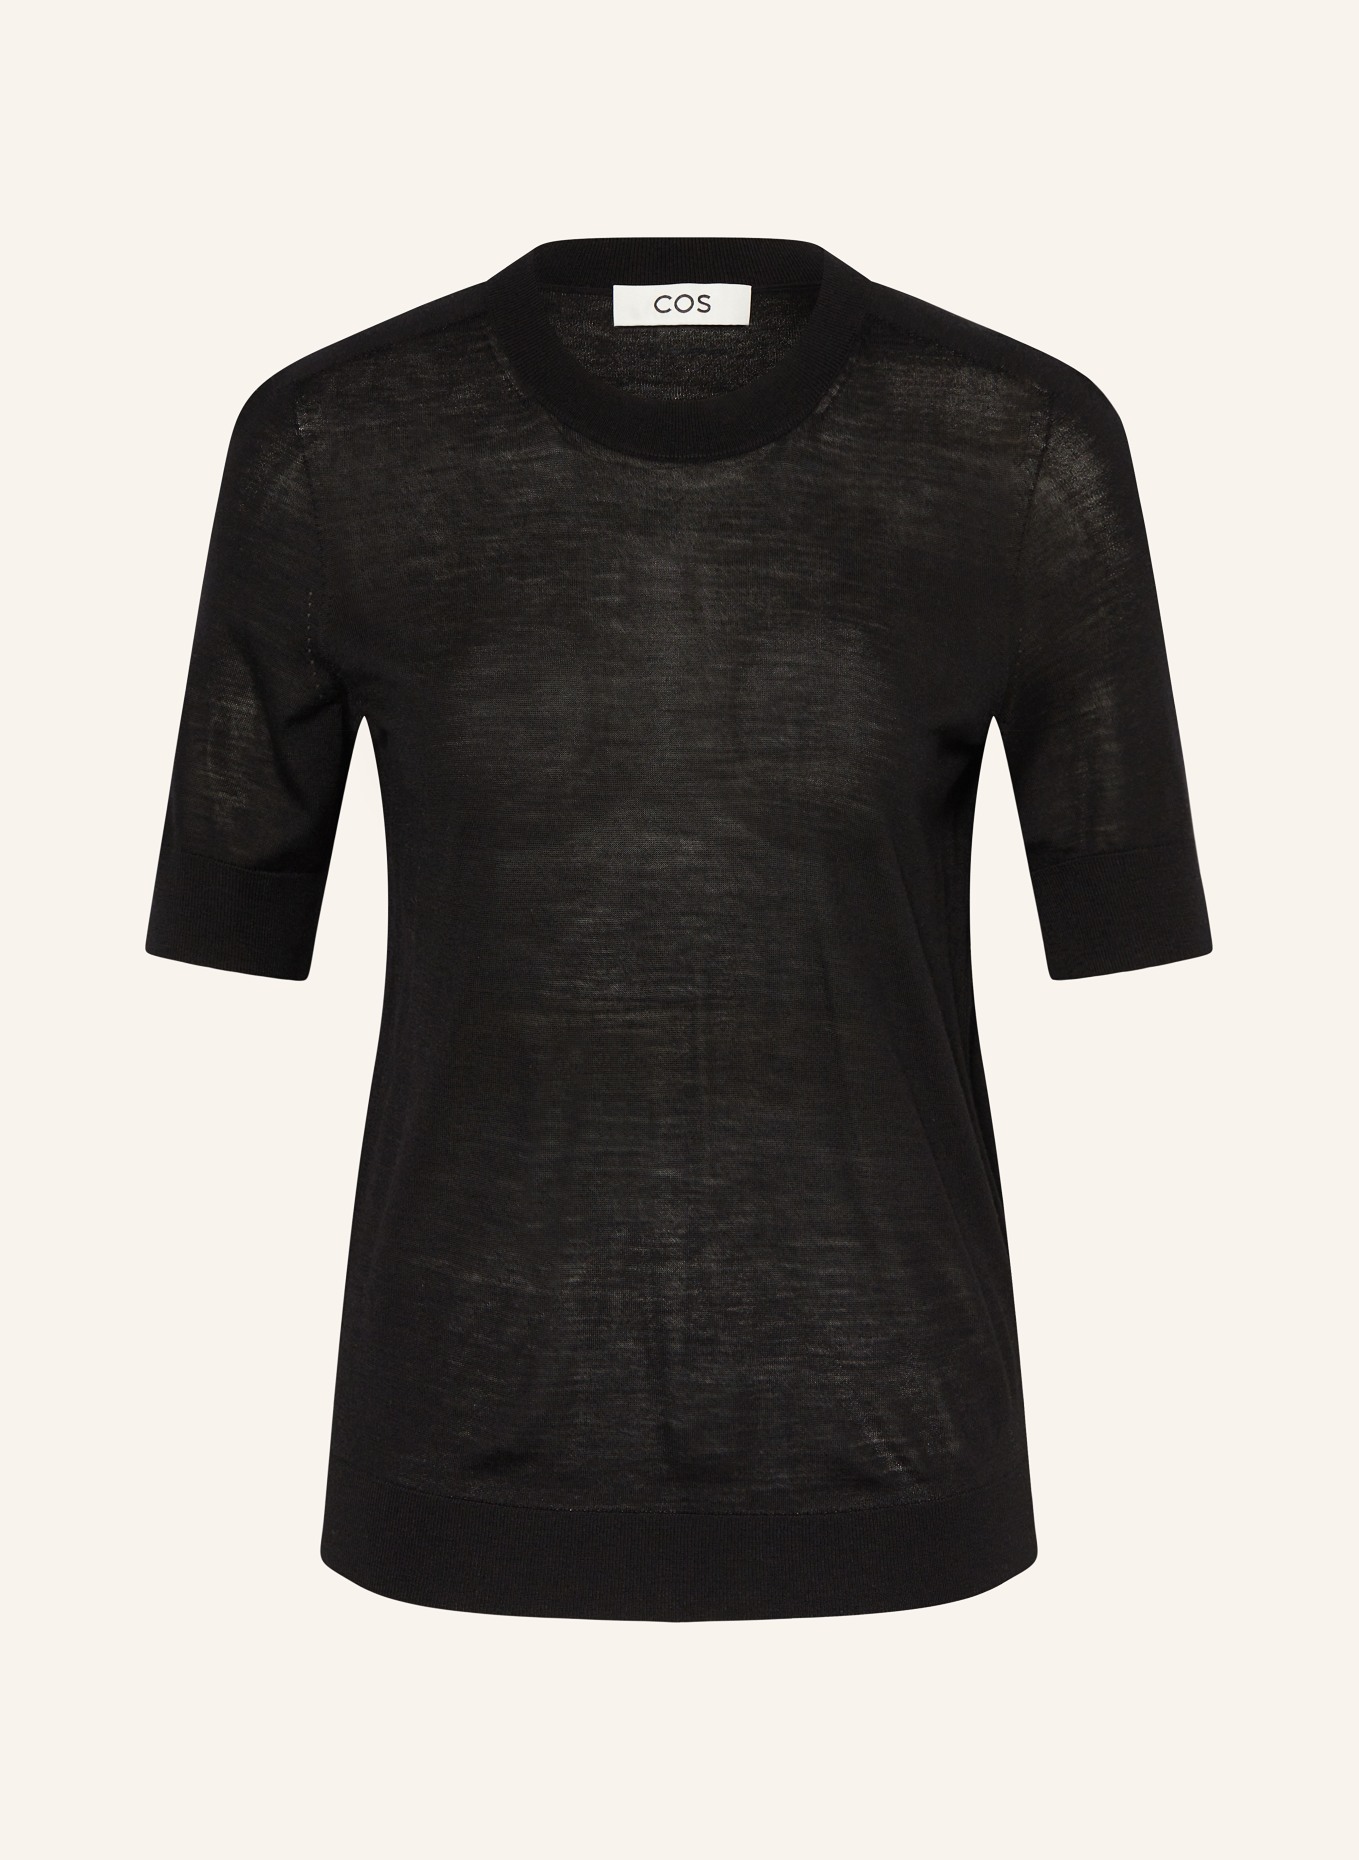 COS Knit shirt, Color: BLACK (Image 1)